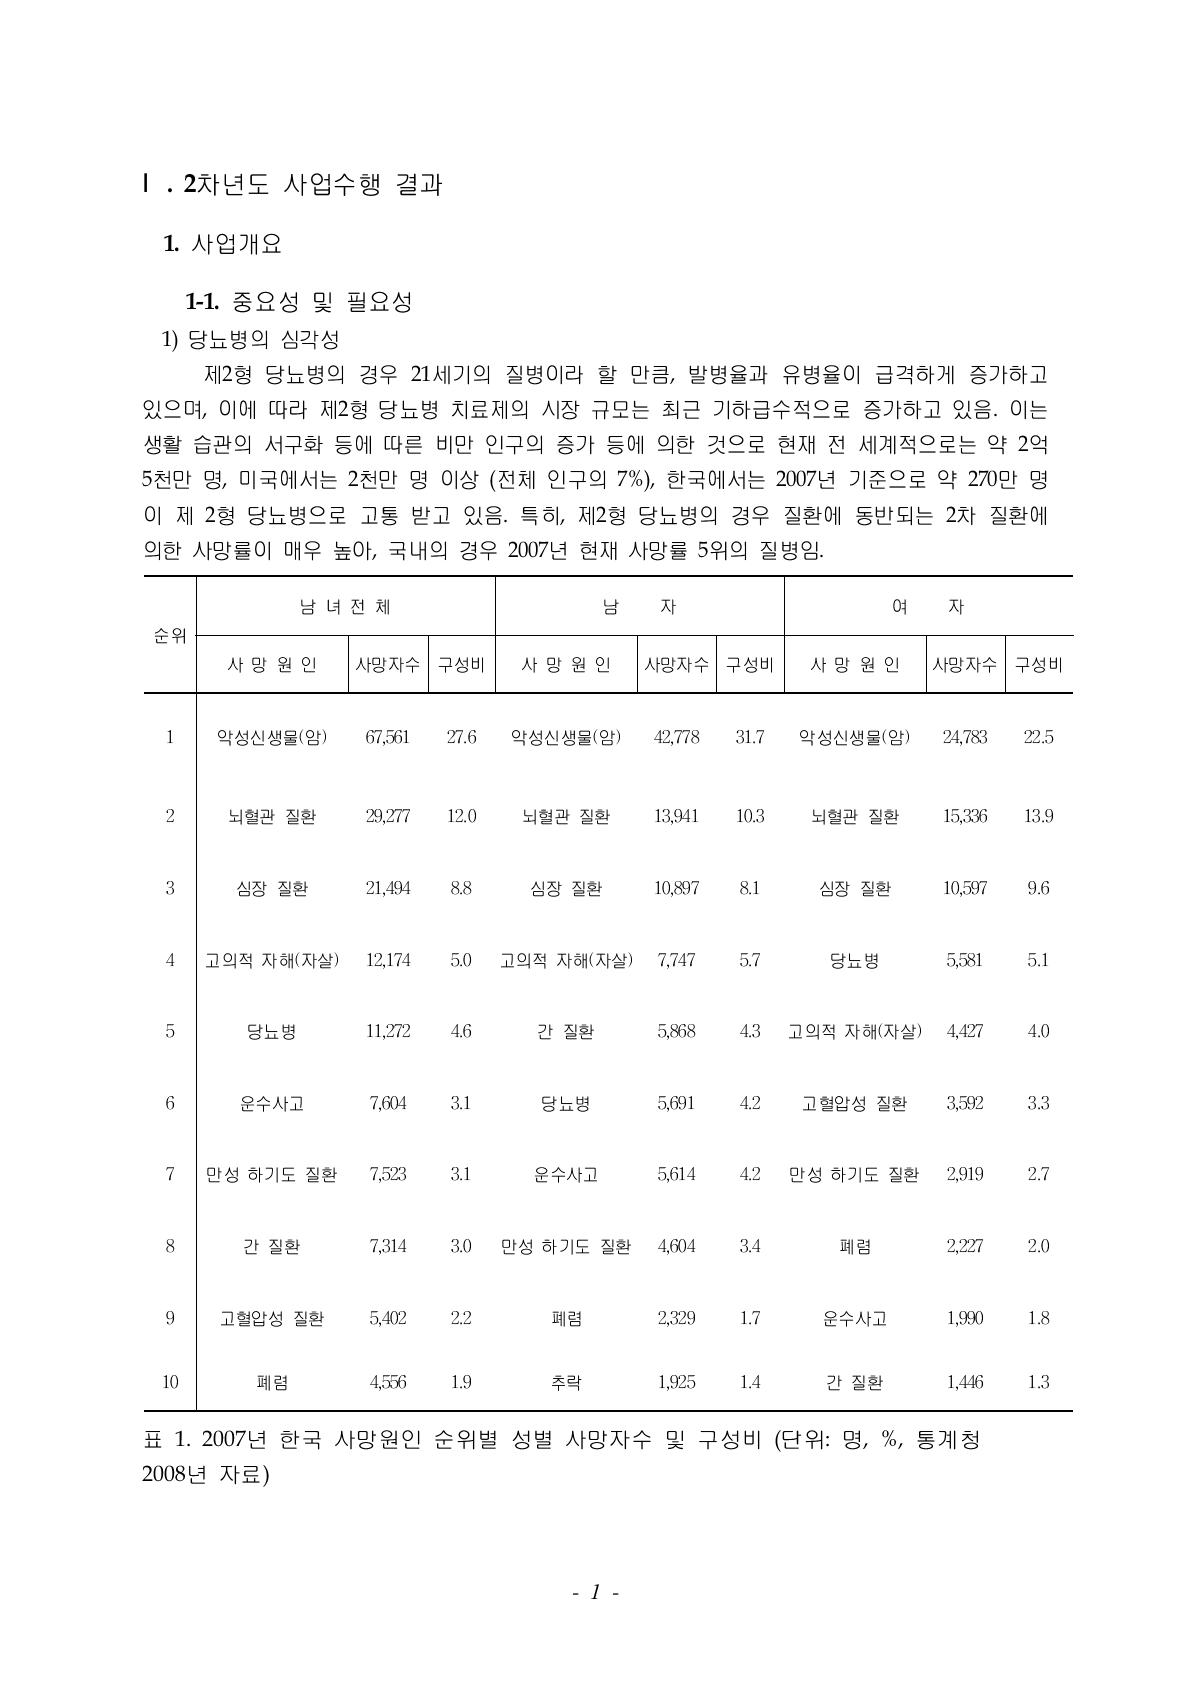 2007년 한국 사망원인 순위별 성별 사망자수 및 구성비 (단위: 명, %, 통계청 2008년 자료)